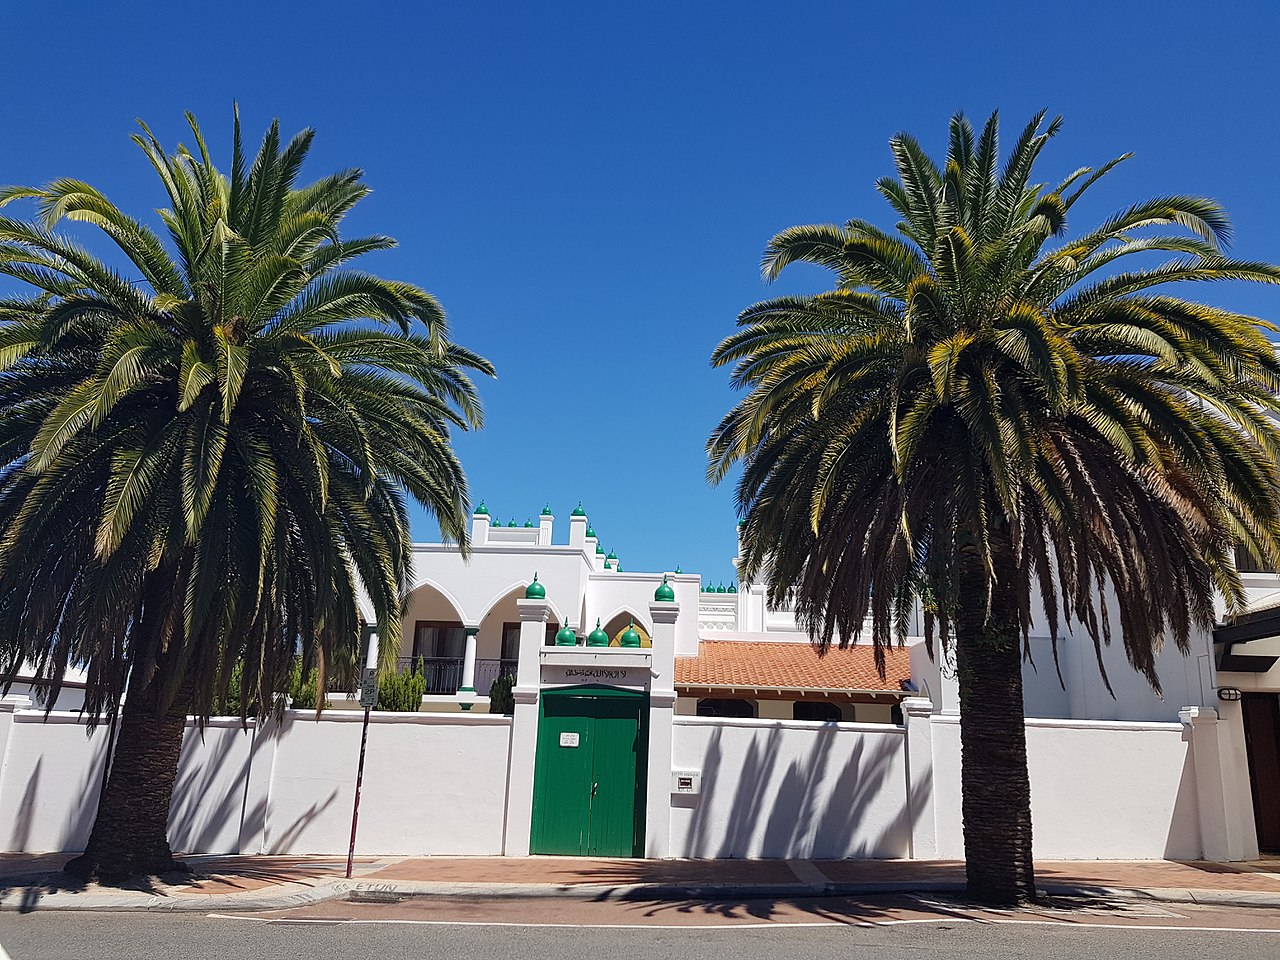 Daftar Masjid di 5 Kota Besar Australia. Dekat dengan Tempat Wisata